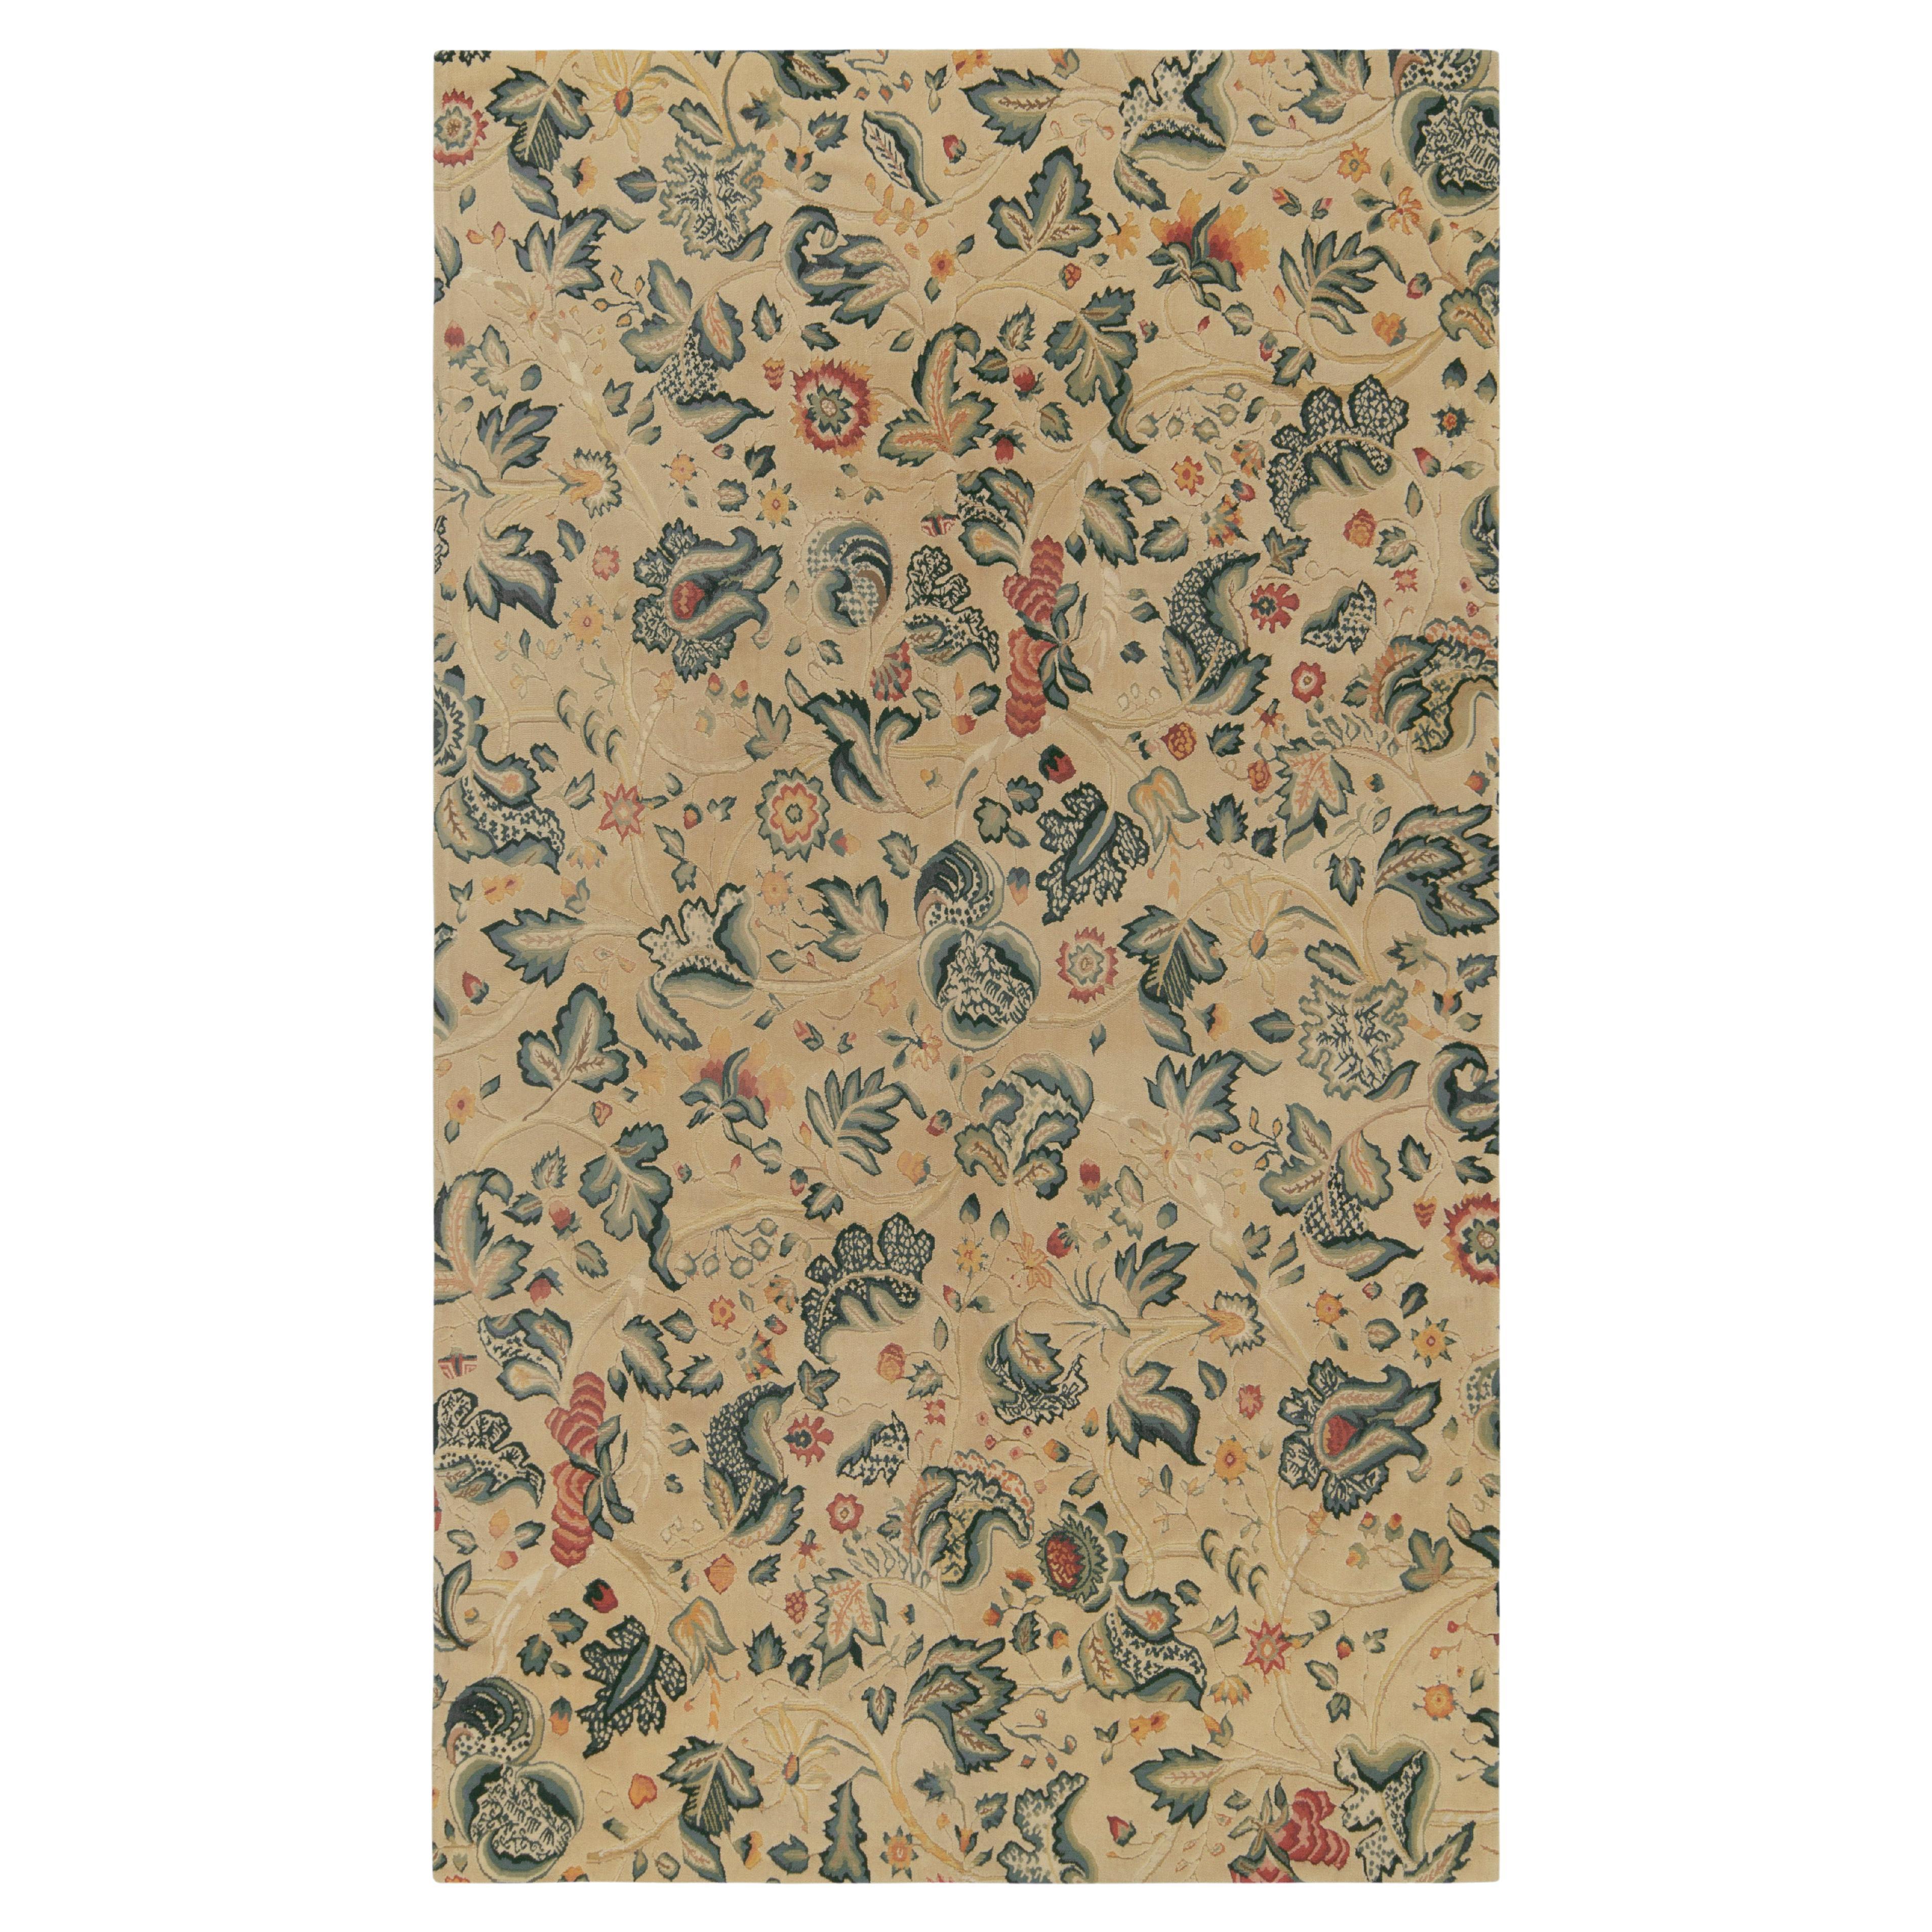 Klassischer Teppich & Kelim-Teppich im Tudor-Stil mit cremefarbenem und grünem Blumenmuster